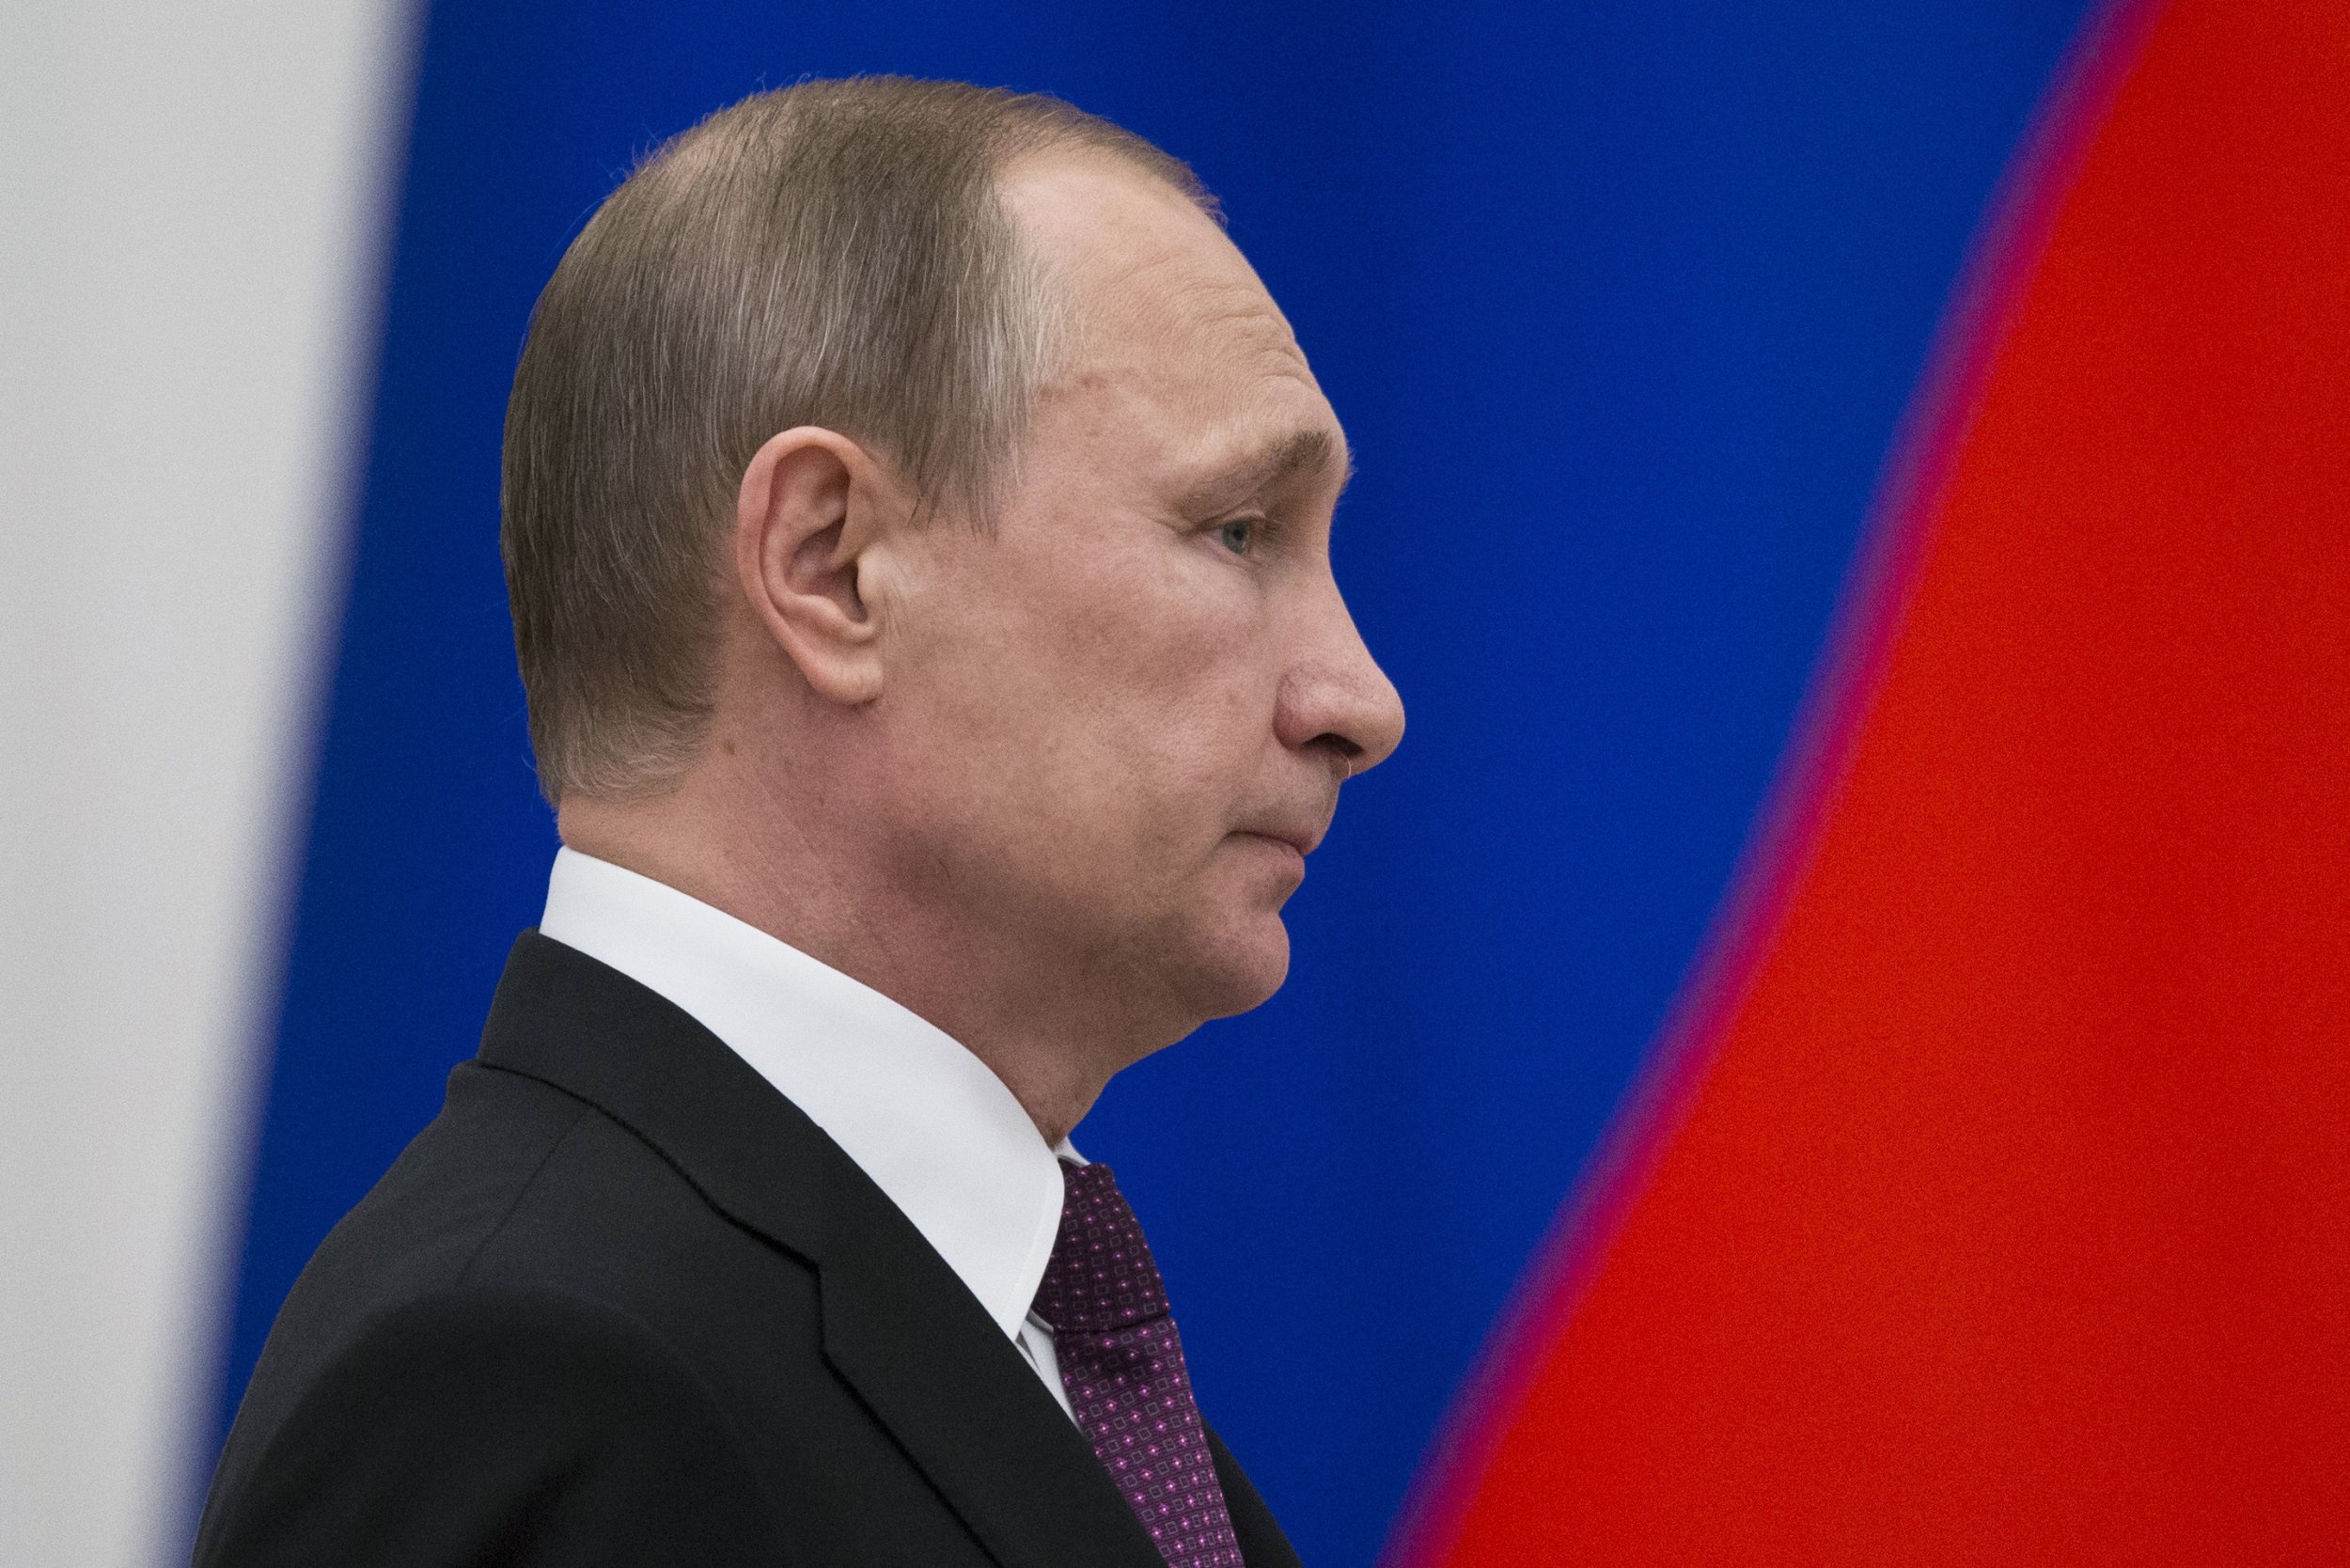 Putin in profile